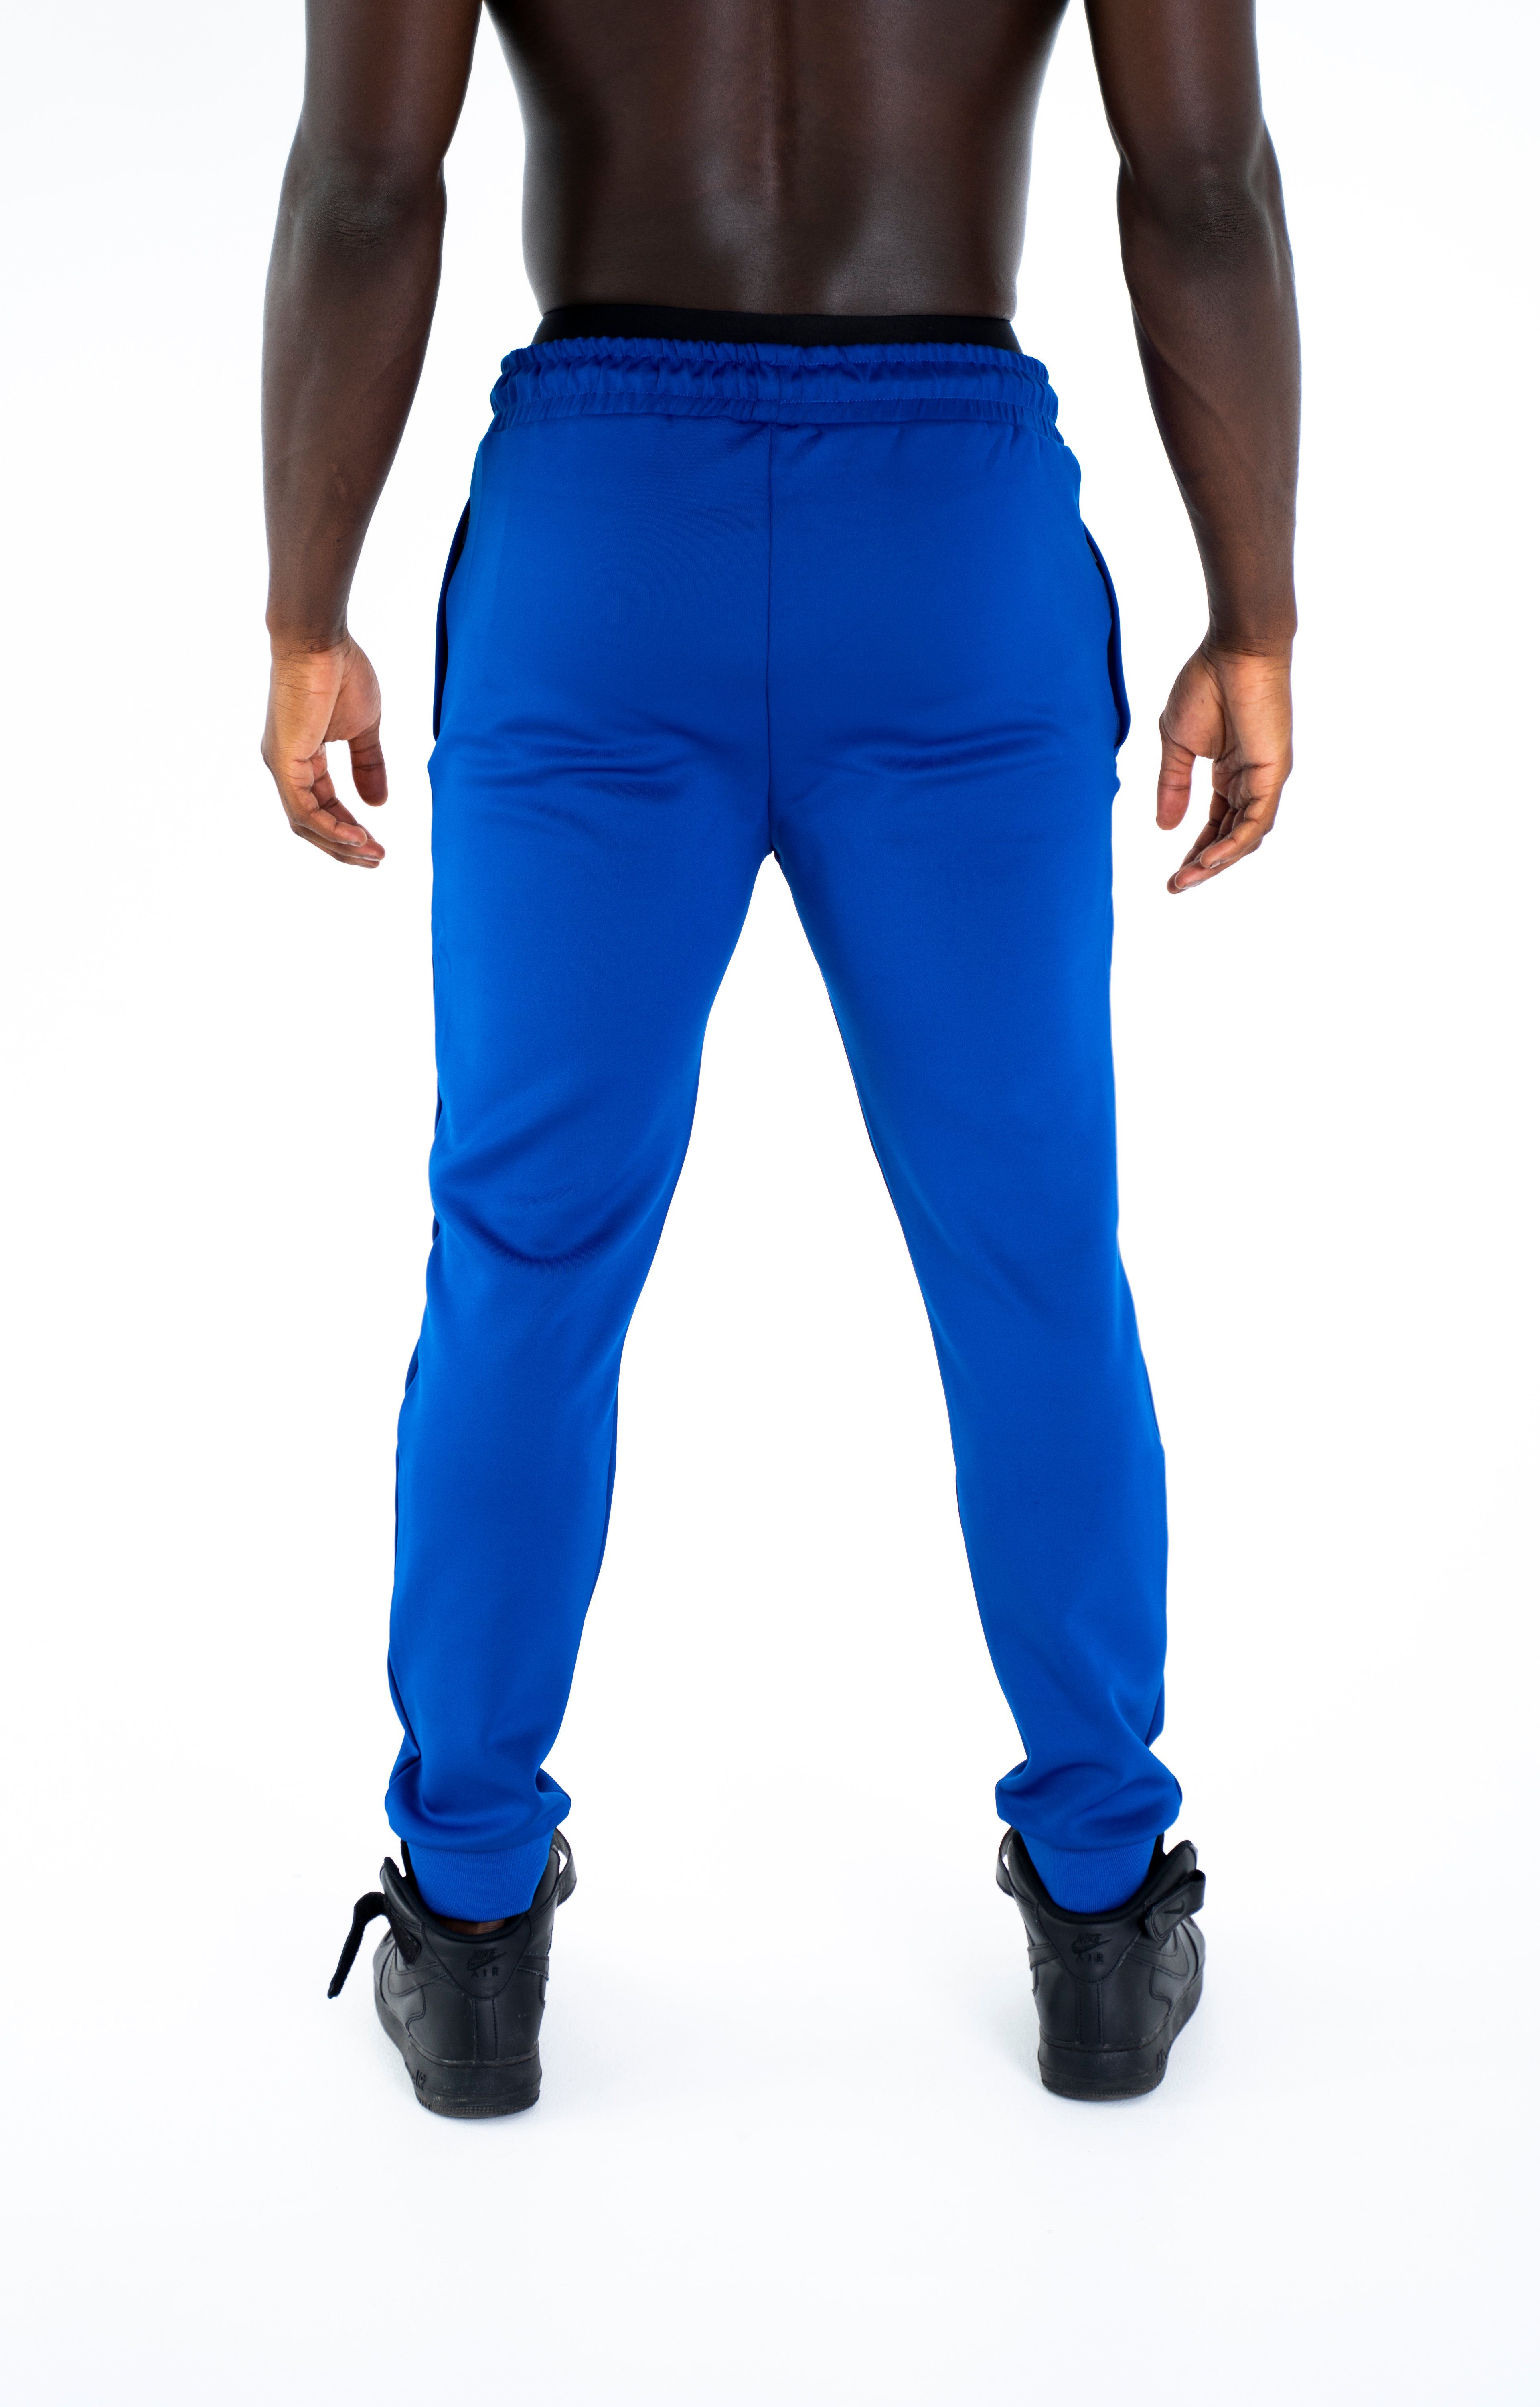 und Modern Hoodie Trainingsjacke mit und Kapuze für Universum Trainingsjacke blau Fitness Freizeit Schulterschnitt, Sportwear Fit Sport,